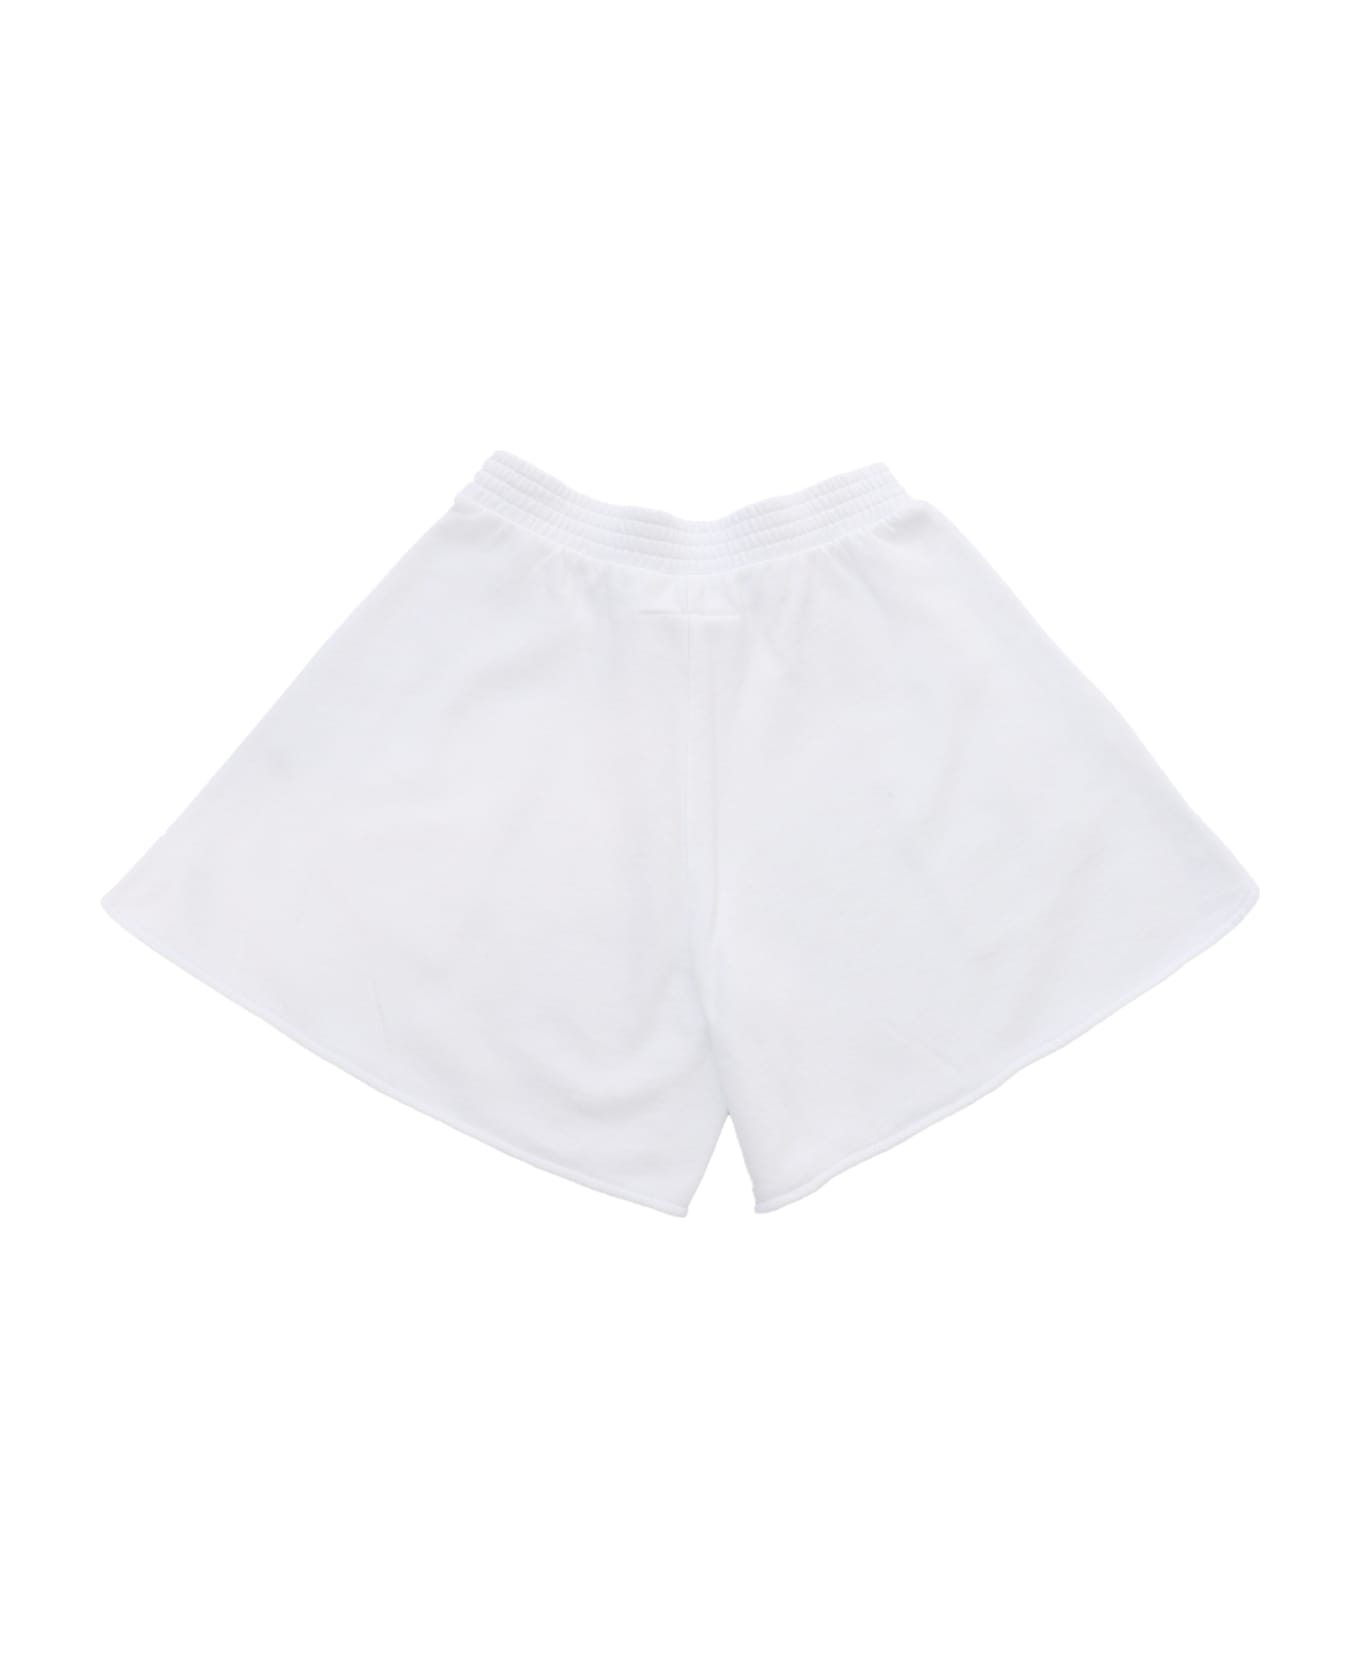 MM6 Maison Margiela White Sweatshirt Shorts - WHITE ボトムス